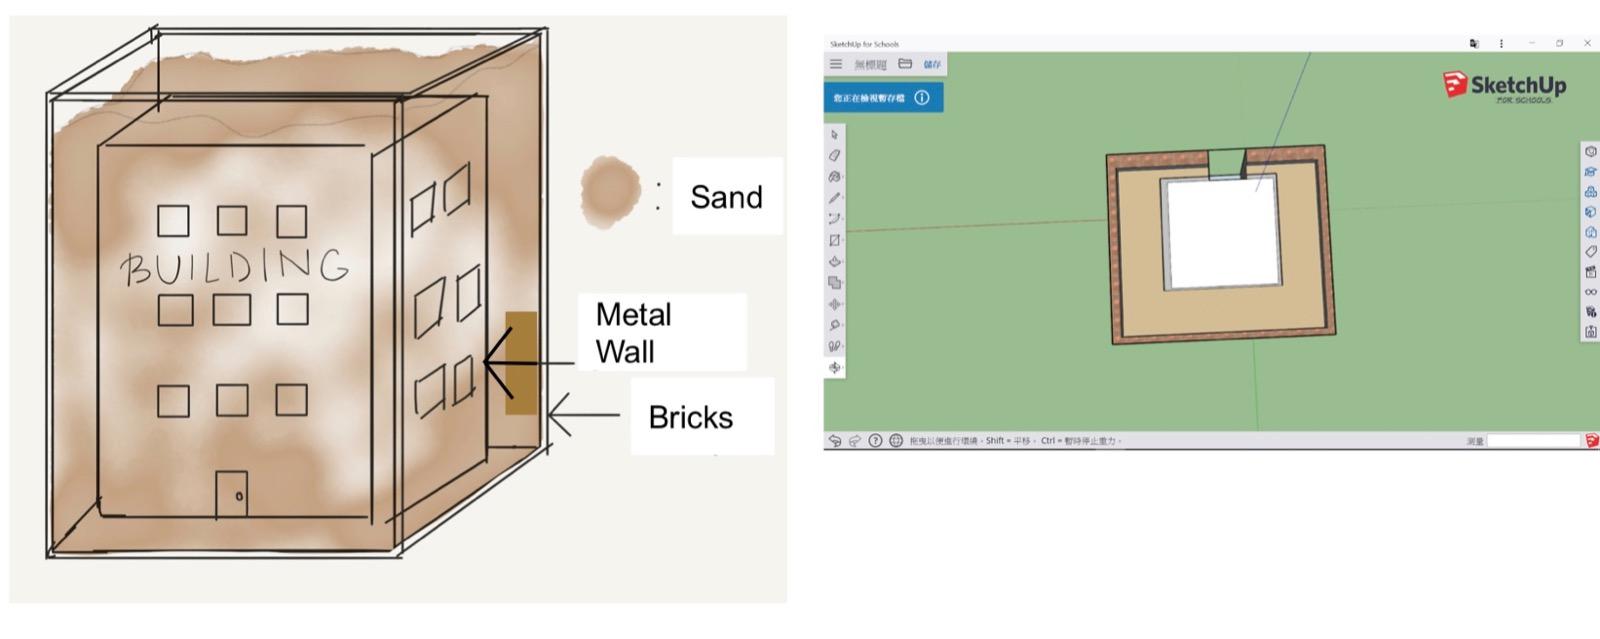 圖2 建築模型使用了沙粒去覆蓋外牆，以金屬為內牆，及以磚頭承載結構